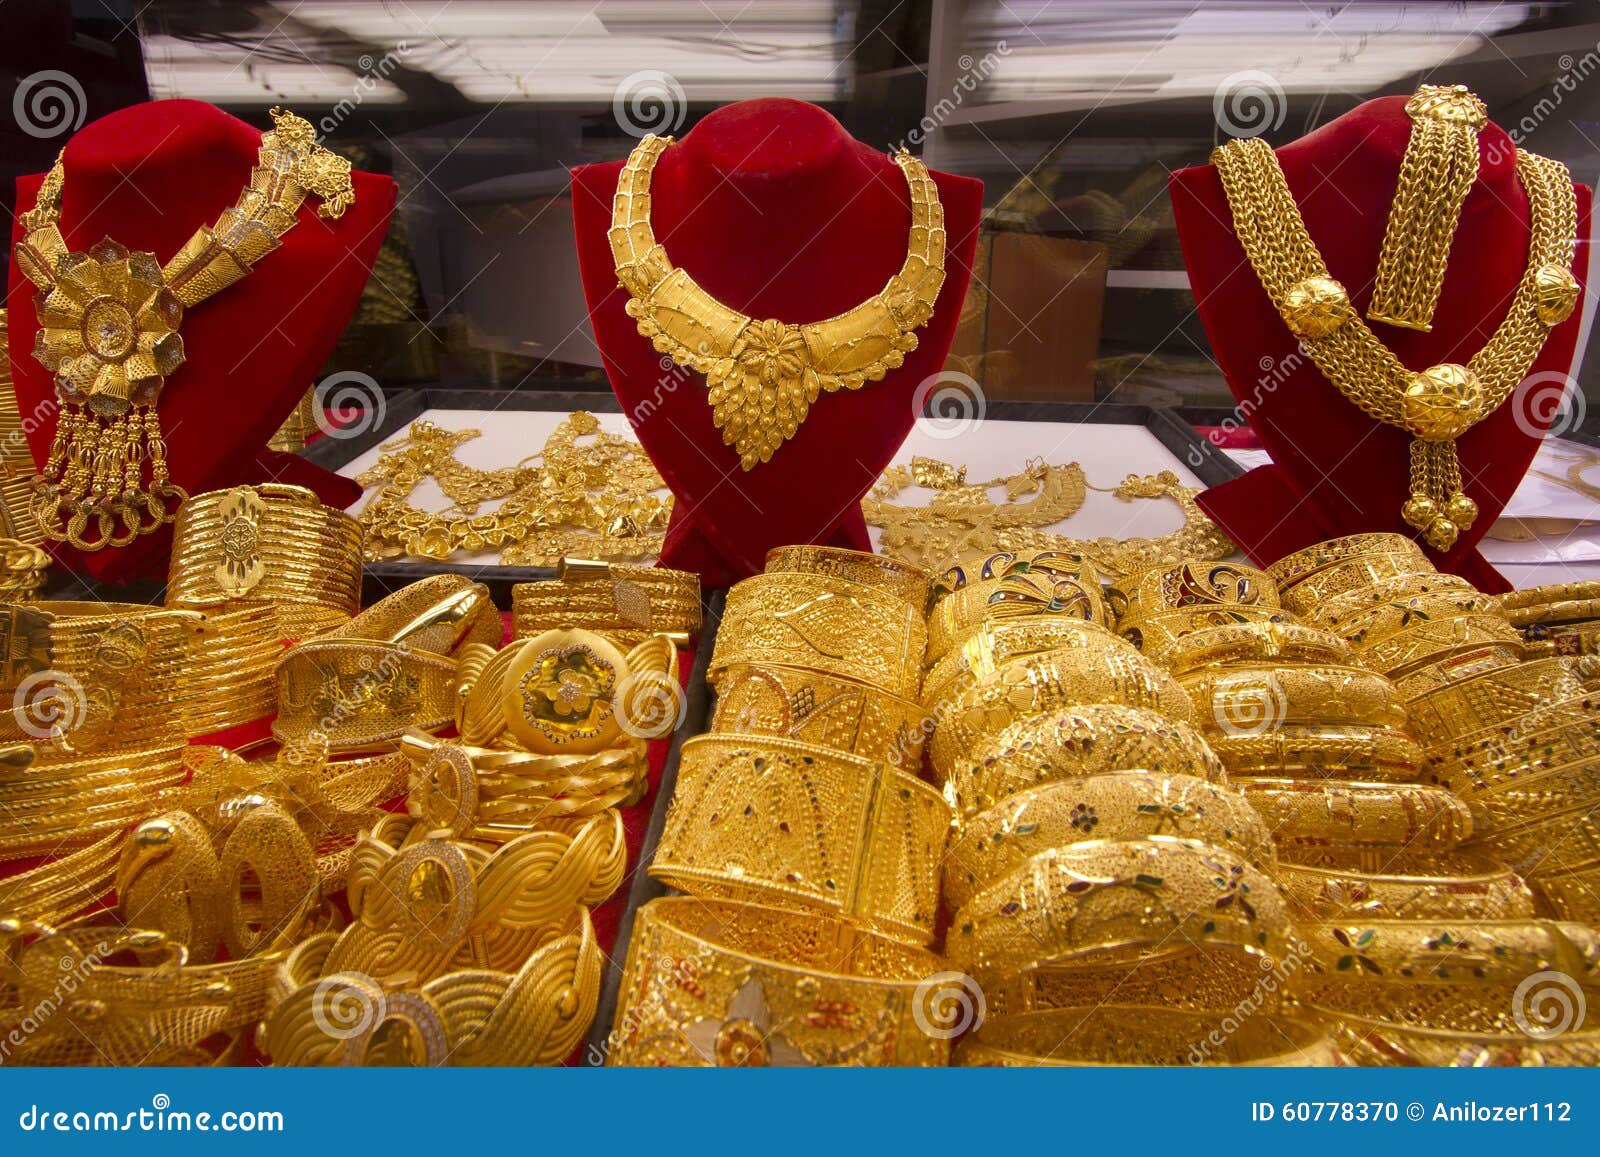 Разговор арабское золото. Арабское золото. Арабские золотые украшения. Арабские эмираты золотой рынок. Украшения в Дубае золотой рынок.